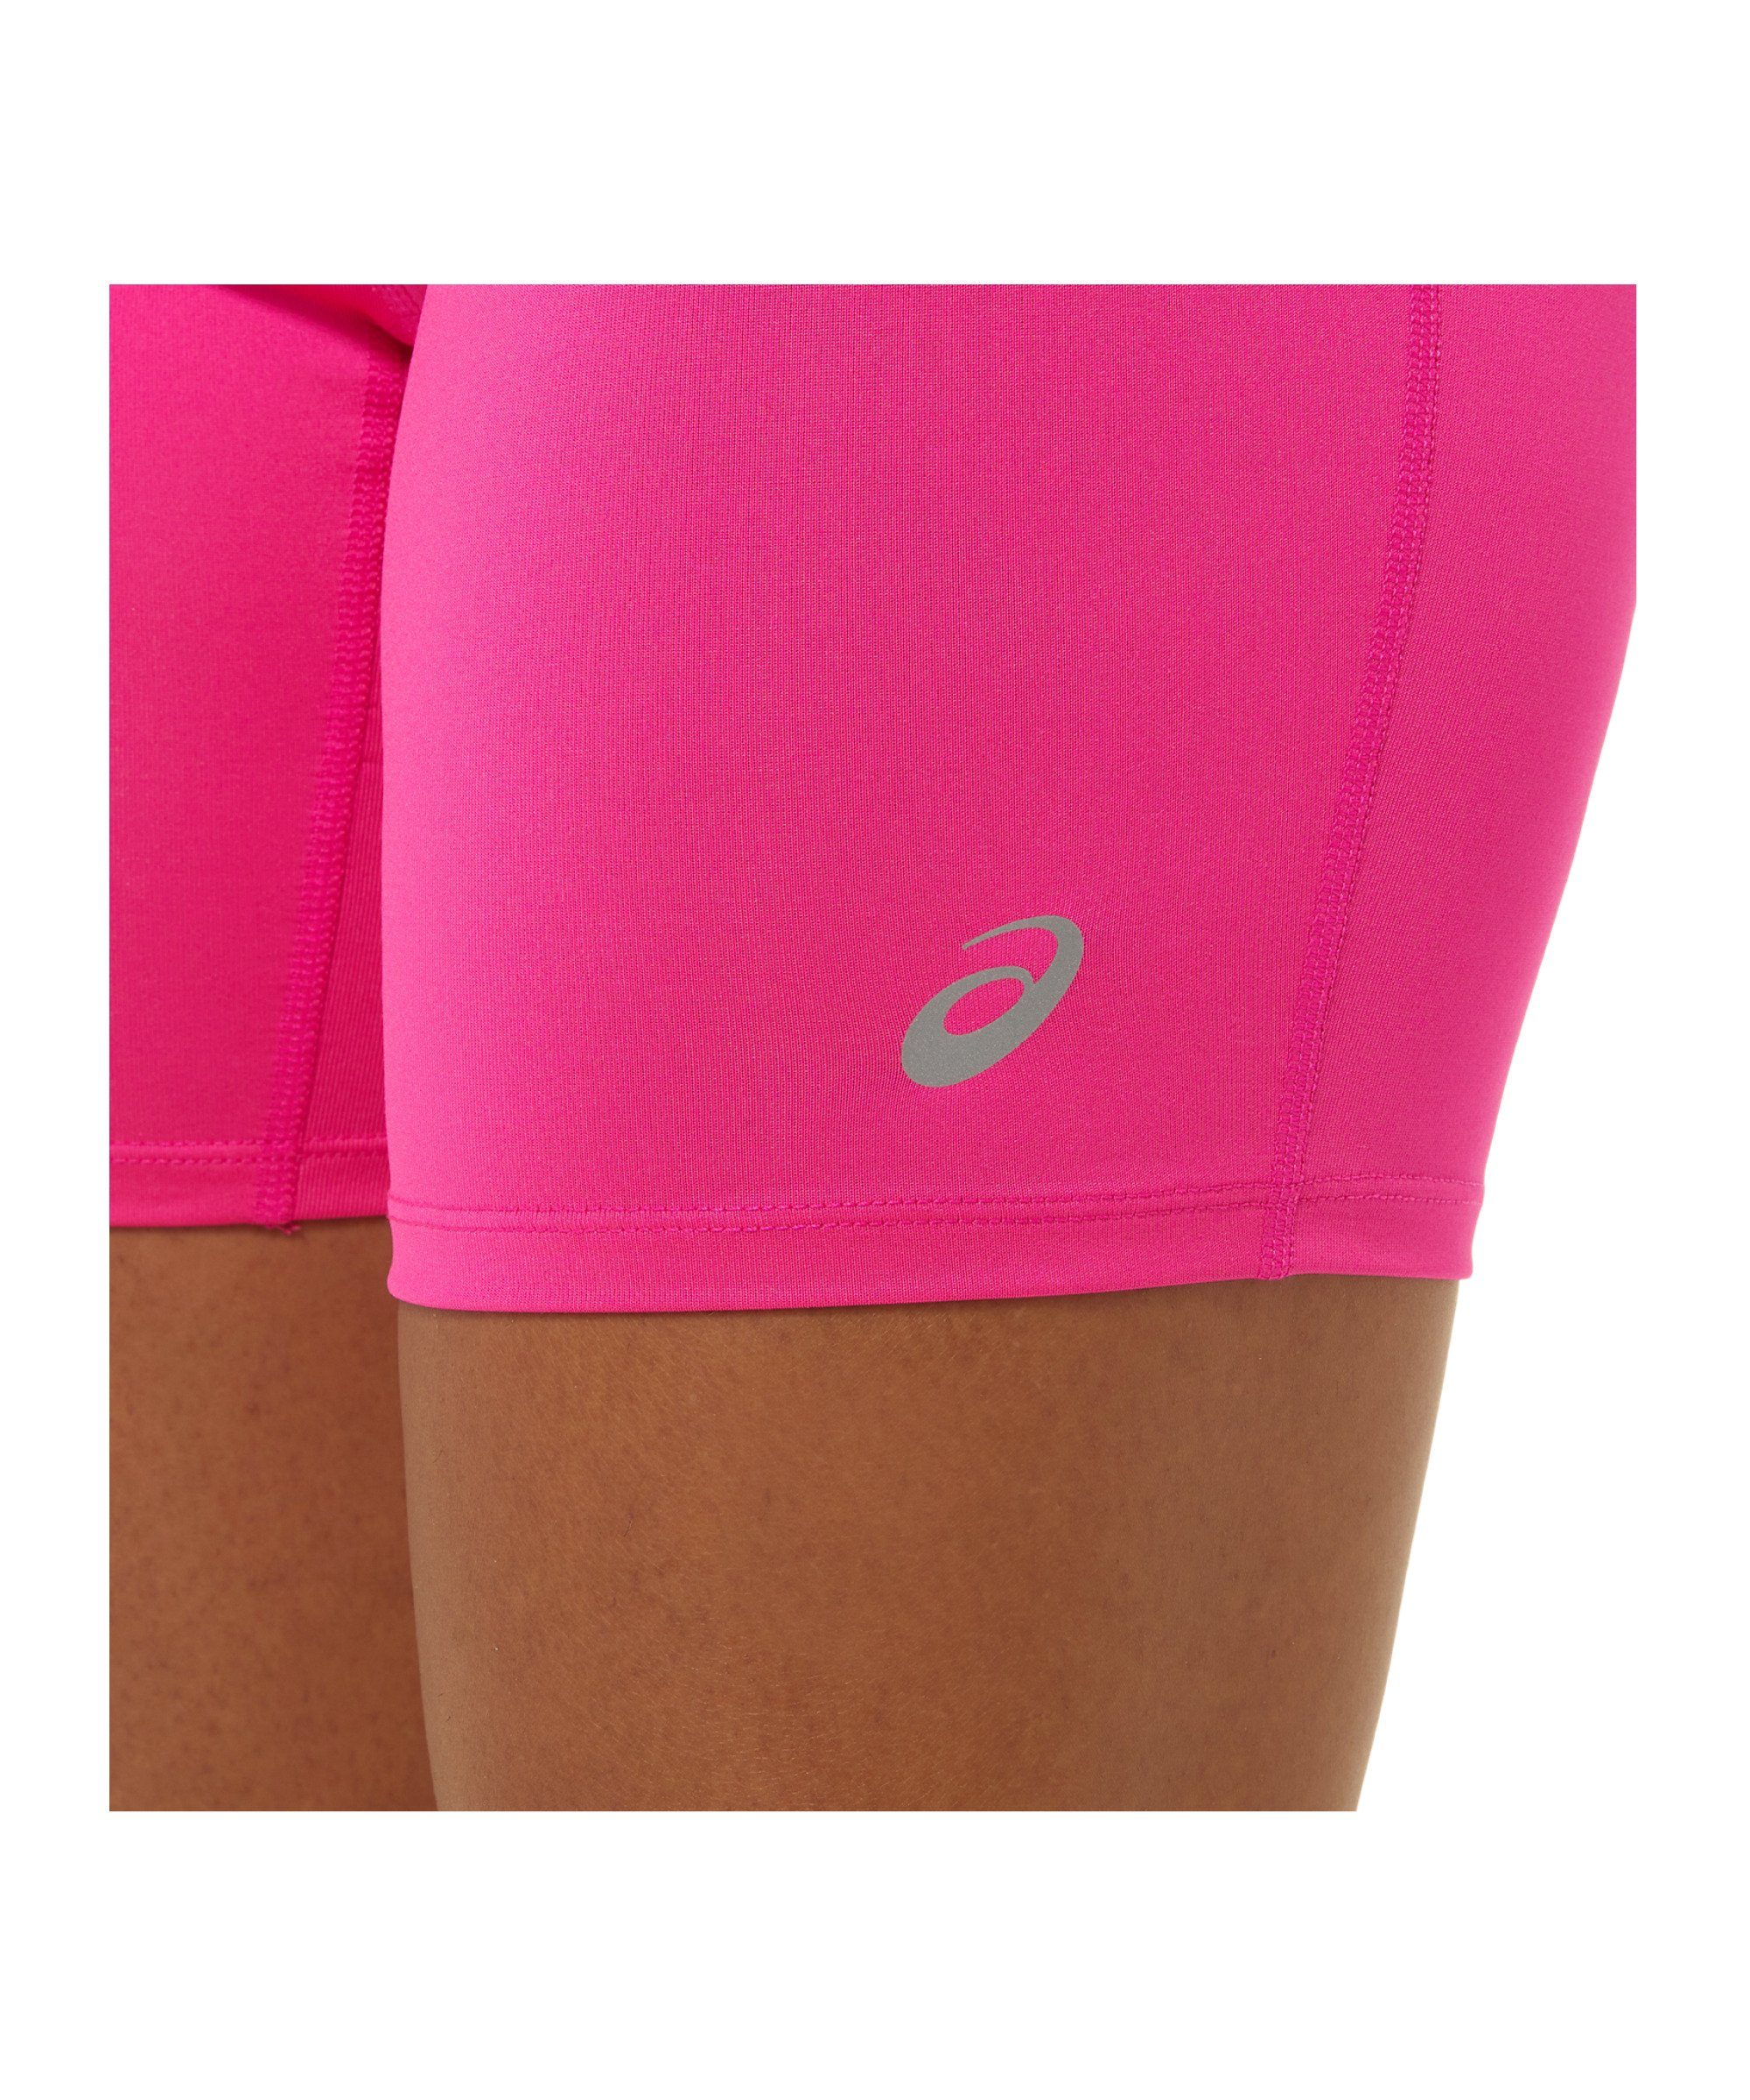 Asics Laufshorts Core Sprinter Short pink Damen Running